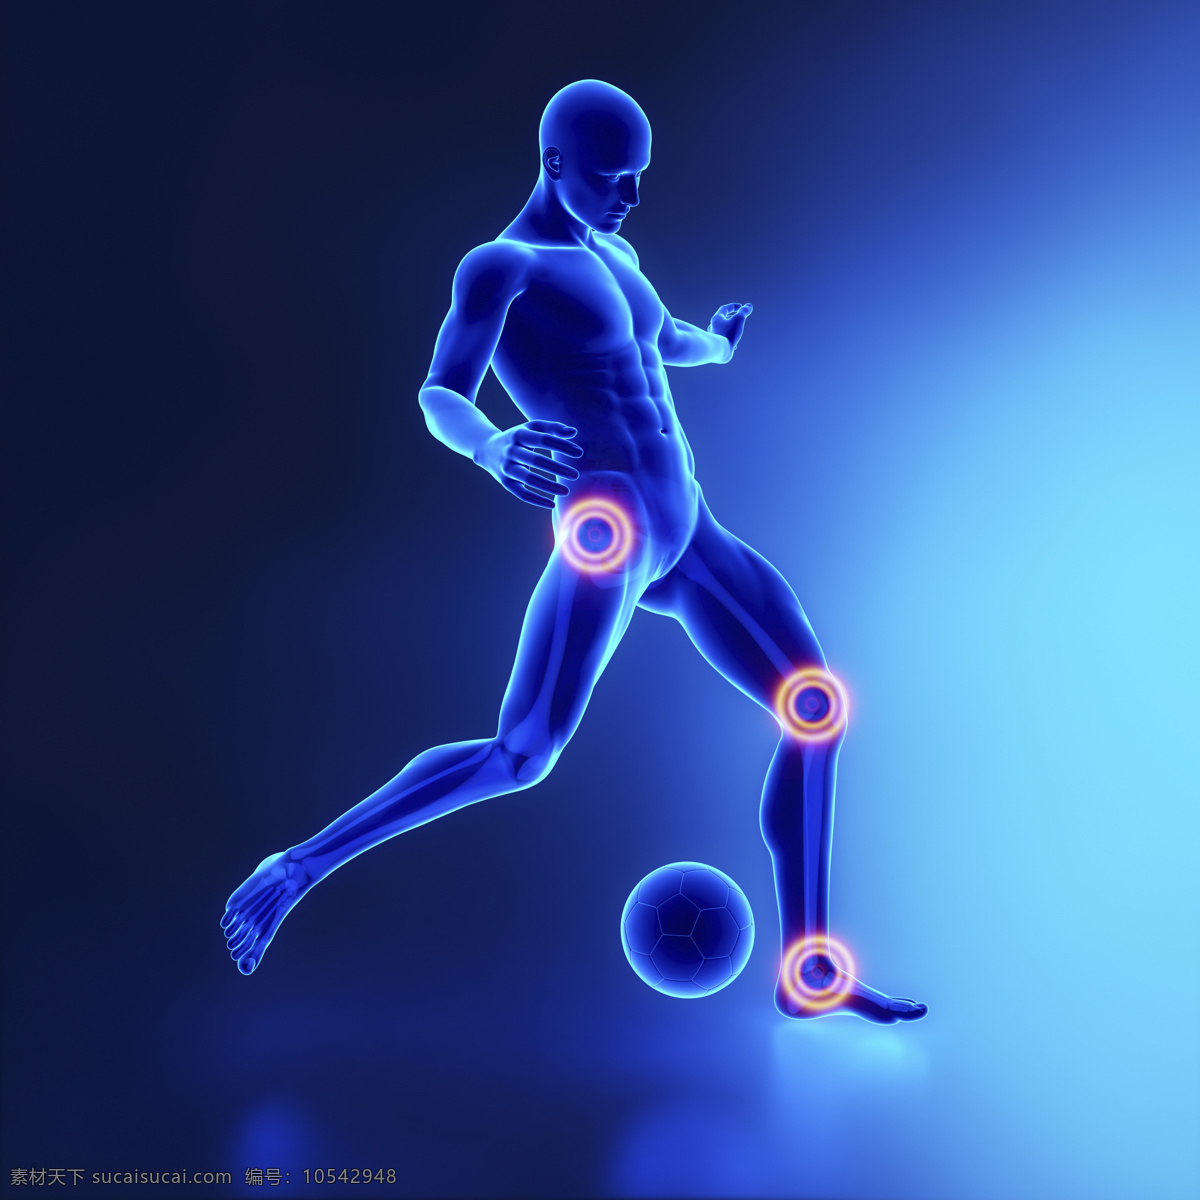 踢球 男性 人体 足球 关节 男性人体器官 医疗科学 医学 人体器官图 人物图片